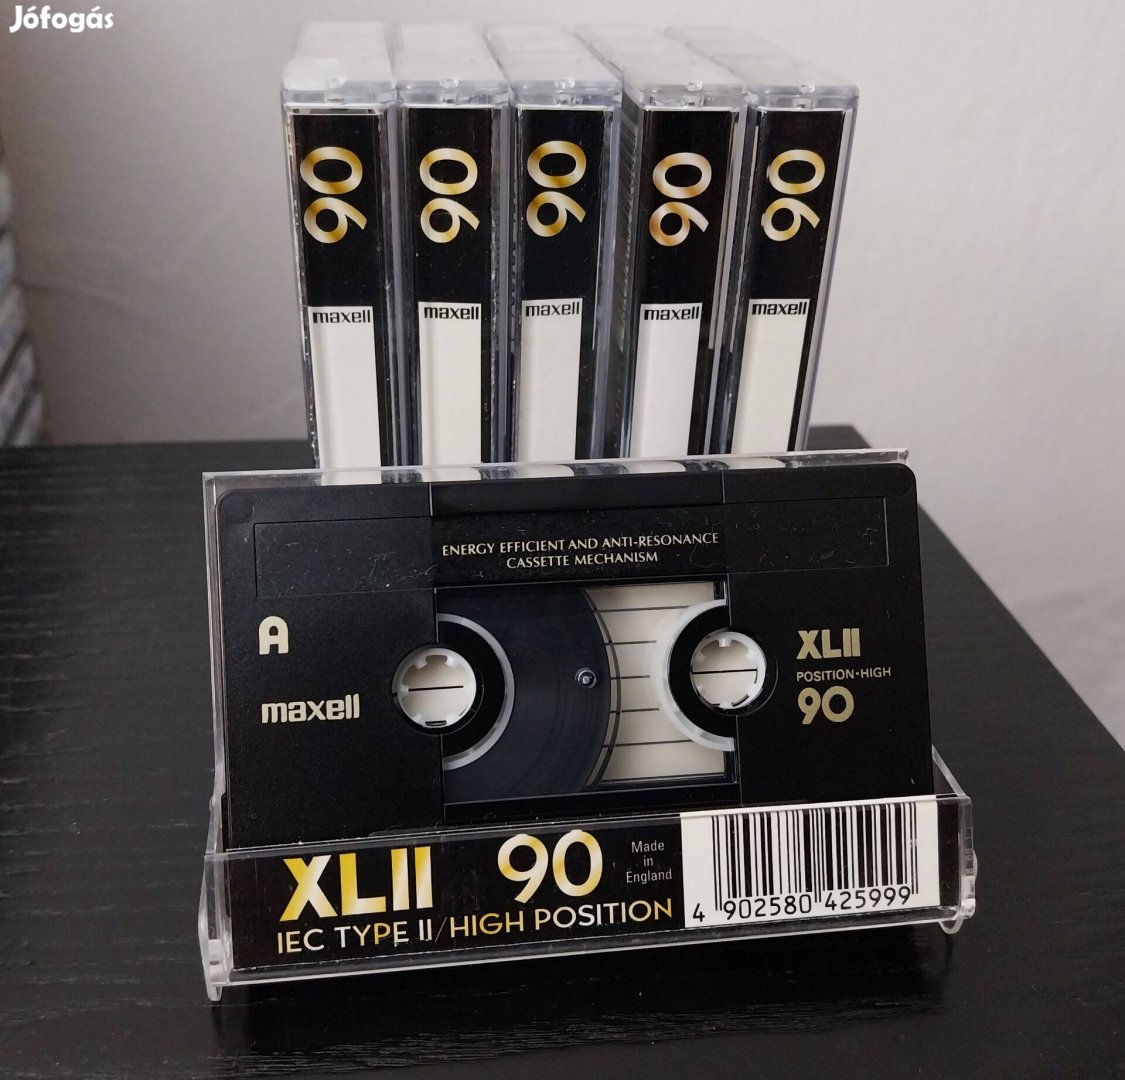 10 darab 90 perces chromos maxell Xlll audio kazetta eladó!